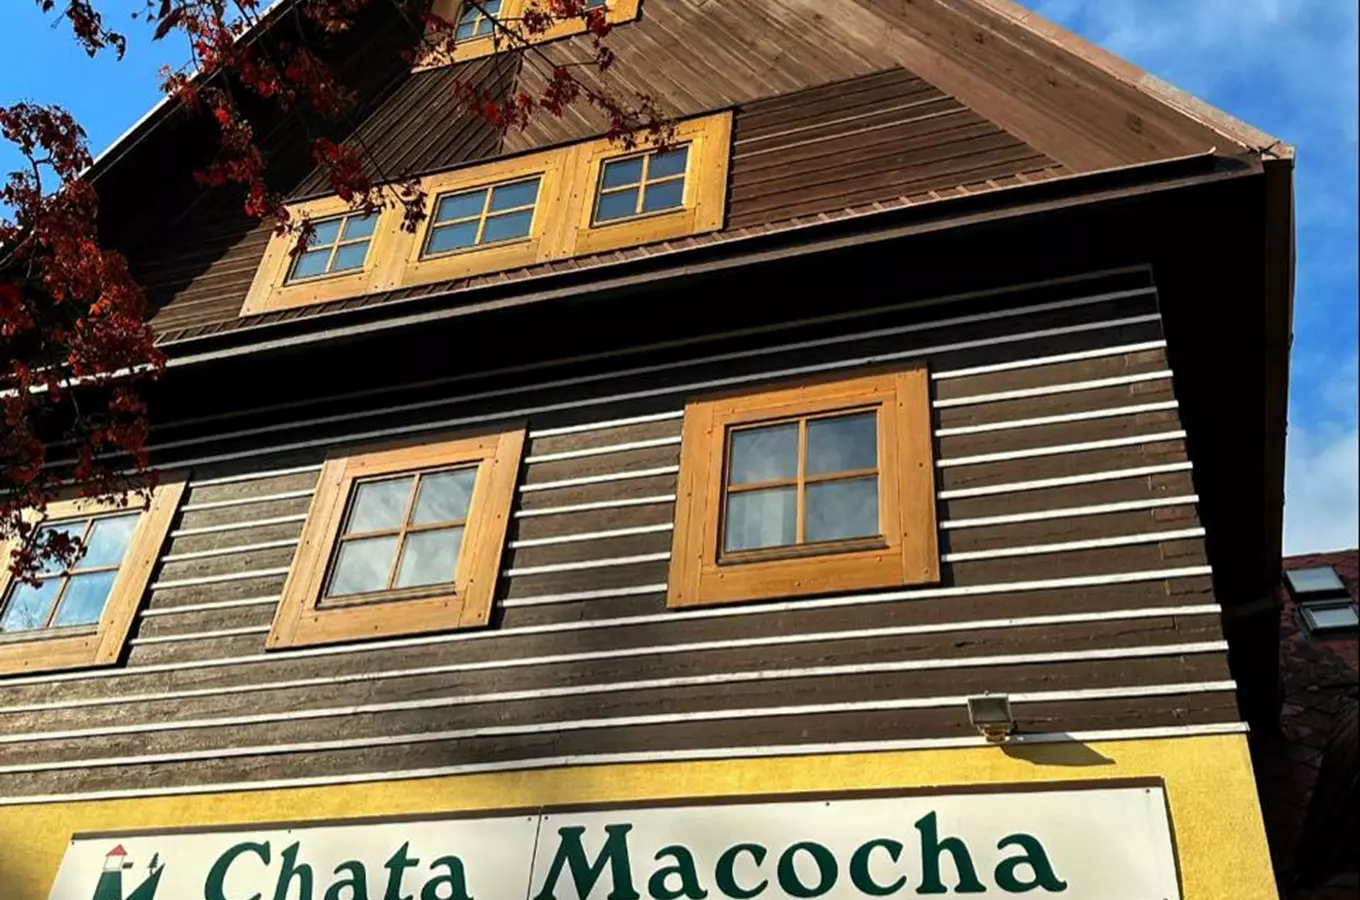 Chata Macocha